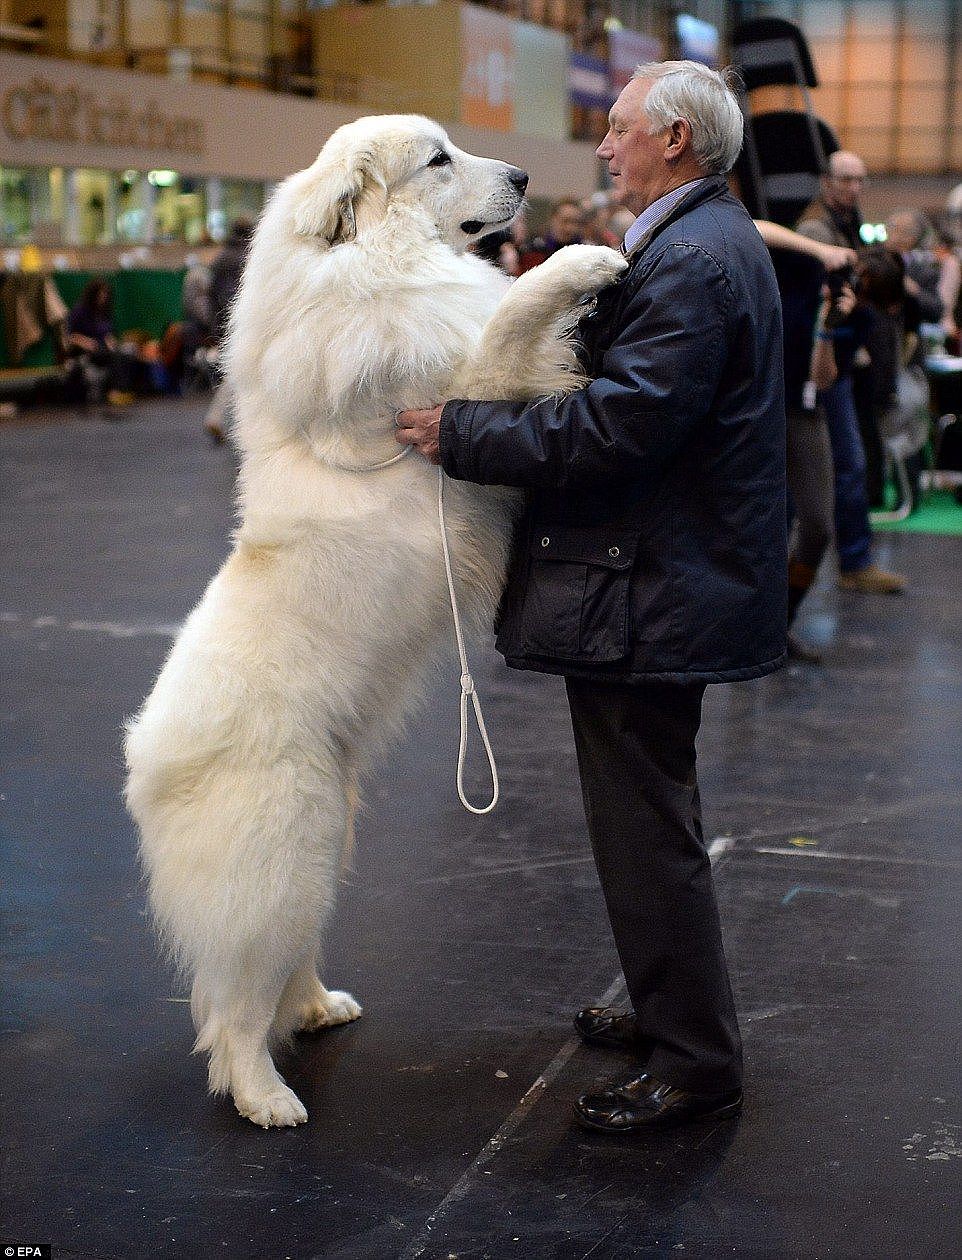 大白熊犬被禁养很冤，这种狗狗不仅亲人，对小动物还极其温柔